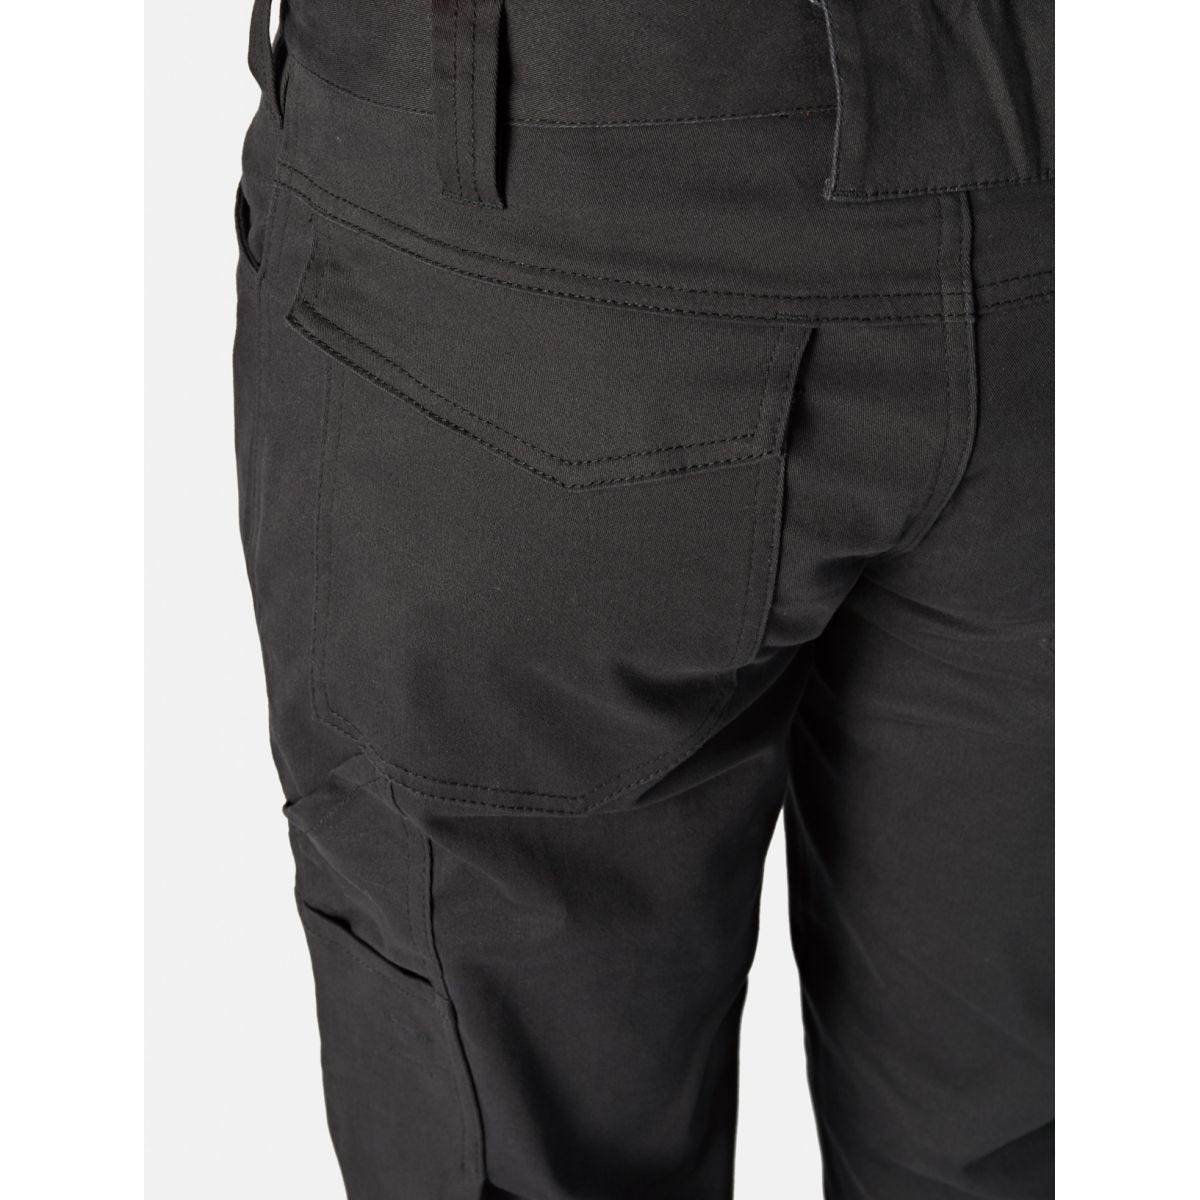 Pantalon Lead In Flex Noir - Dickies - Taille 42 2